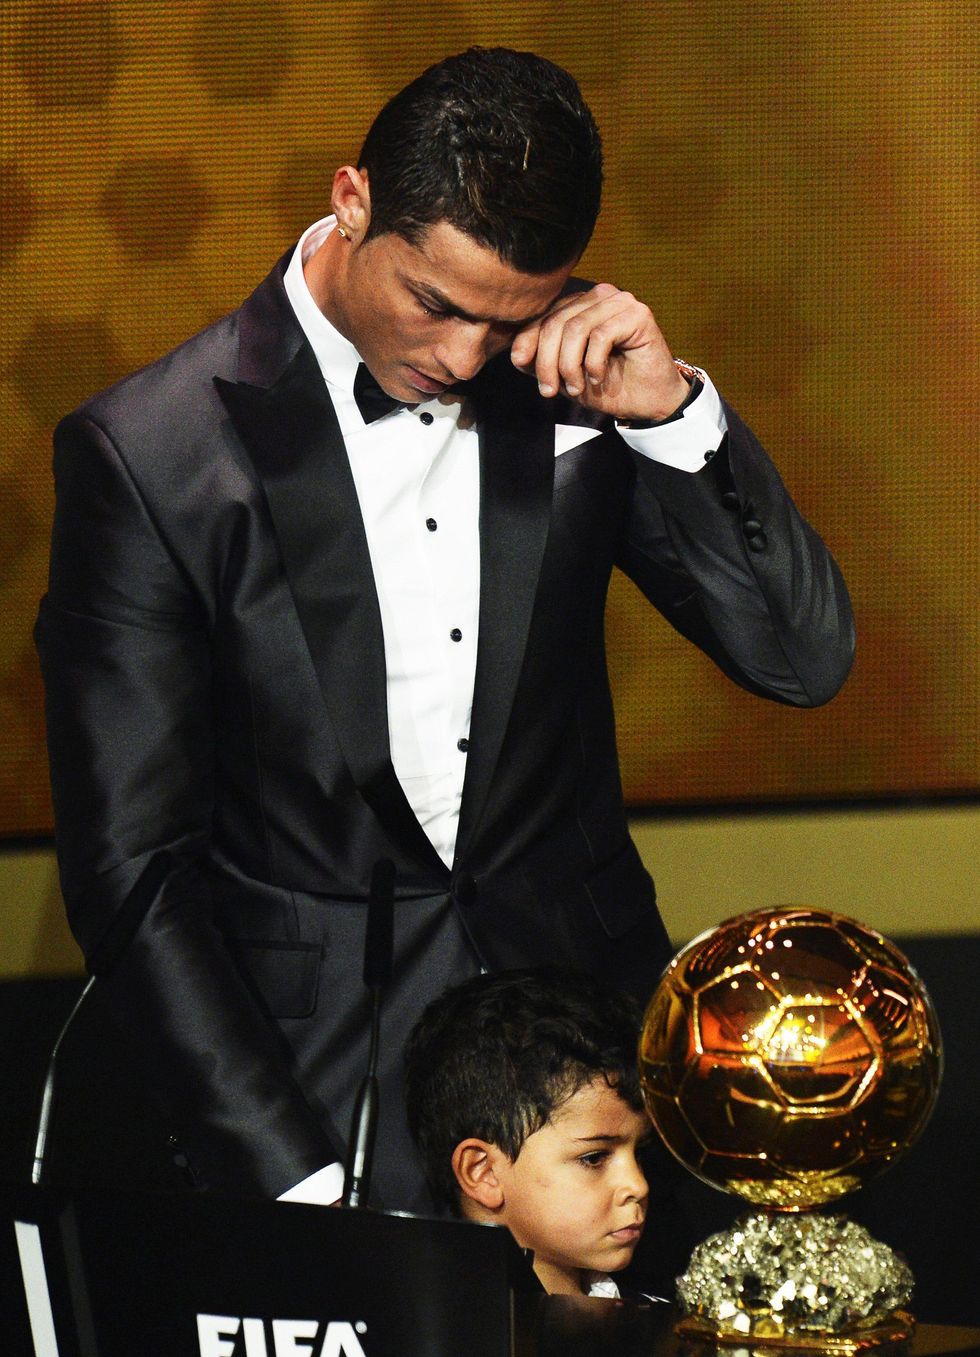 Le lacrime di Cristiano Ronaldo commuovono il mondo - FOTO